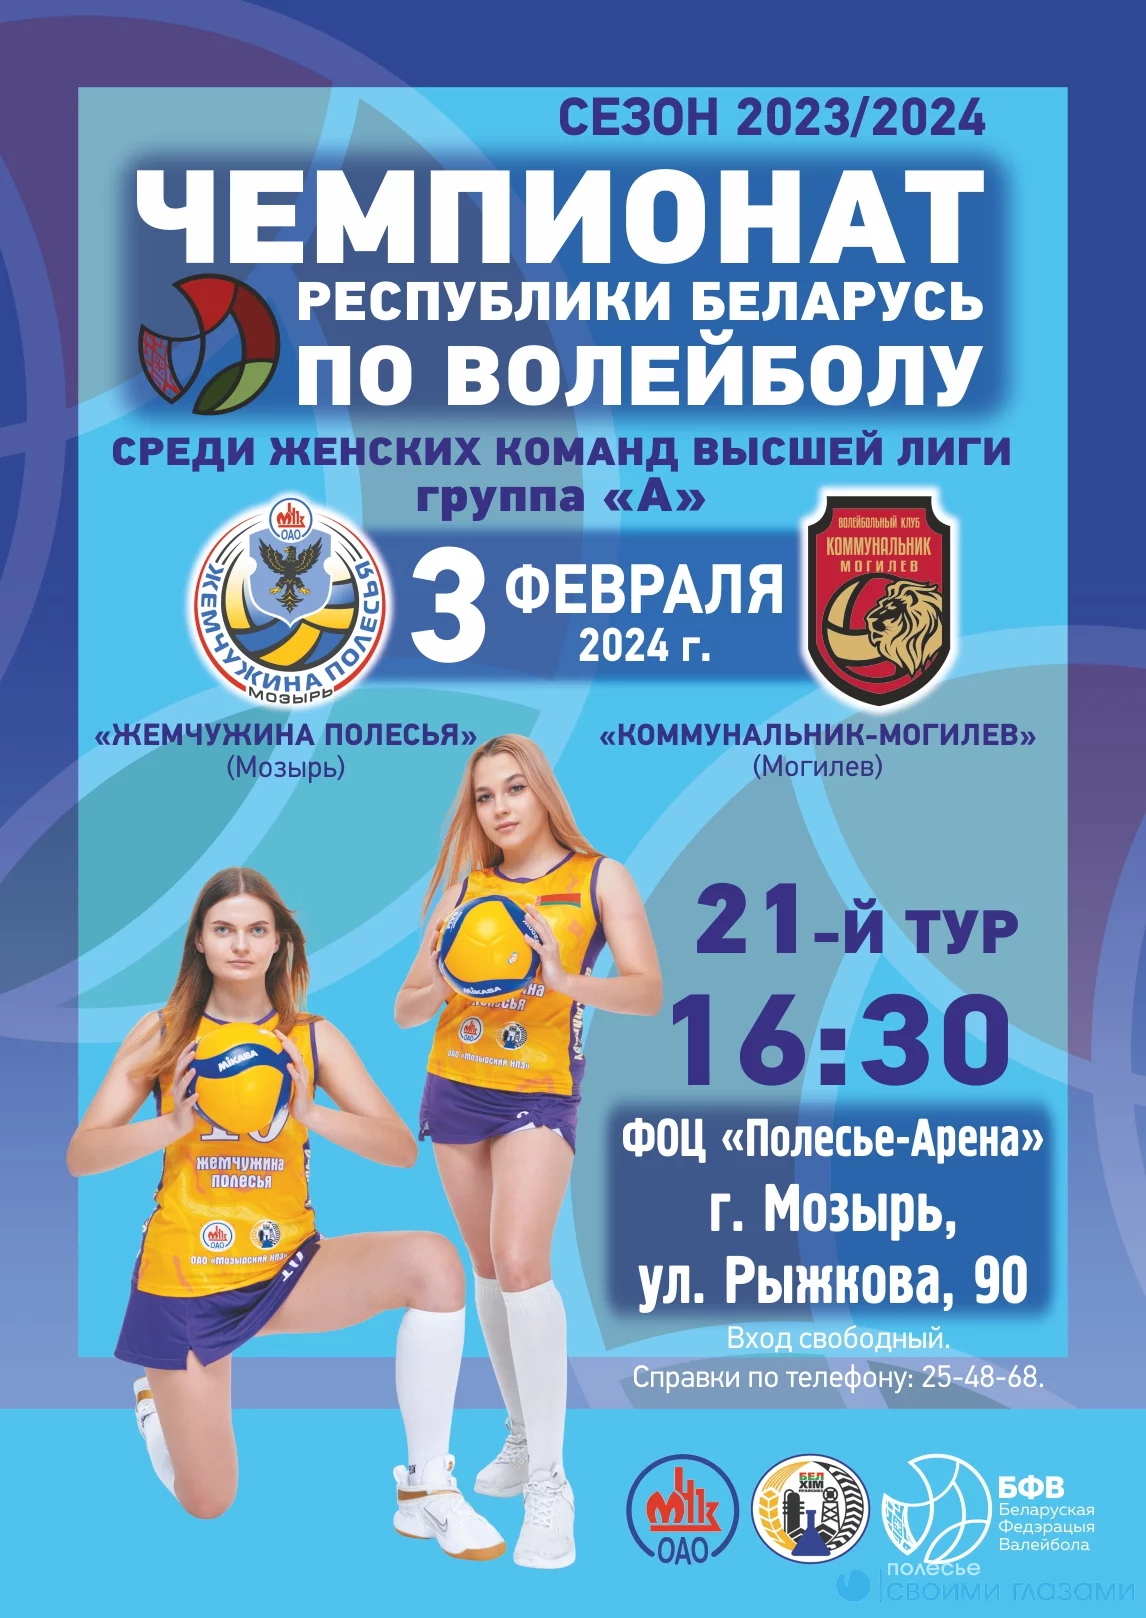 в ФОЦ «Полесье-Арена» состоится  чемпионат РБ по волейболу